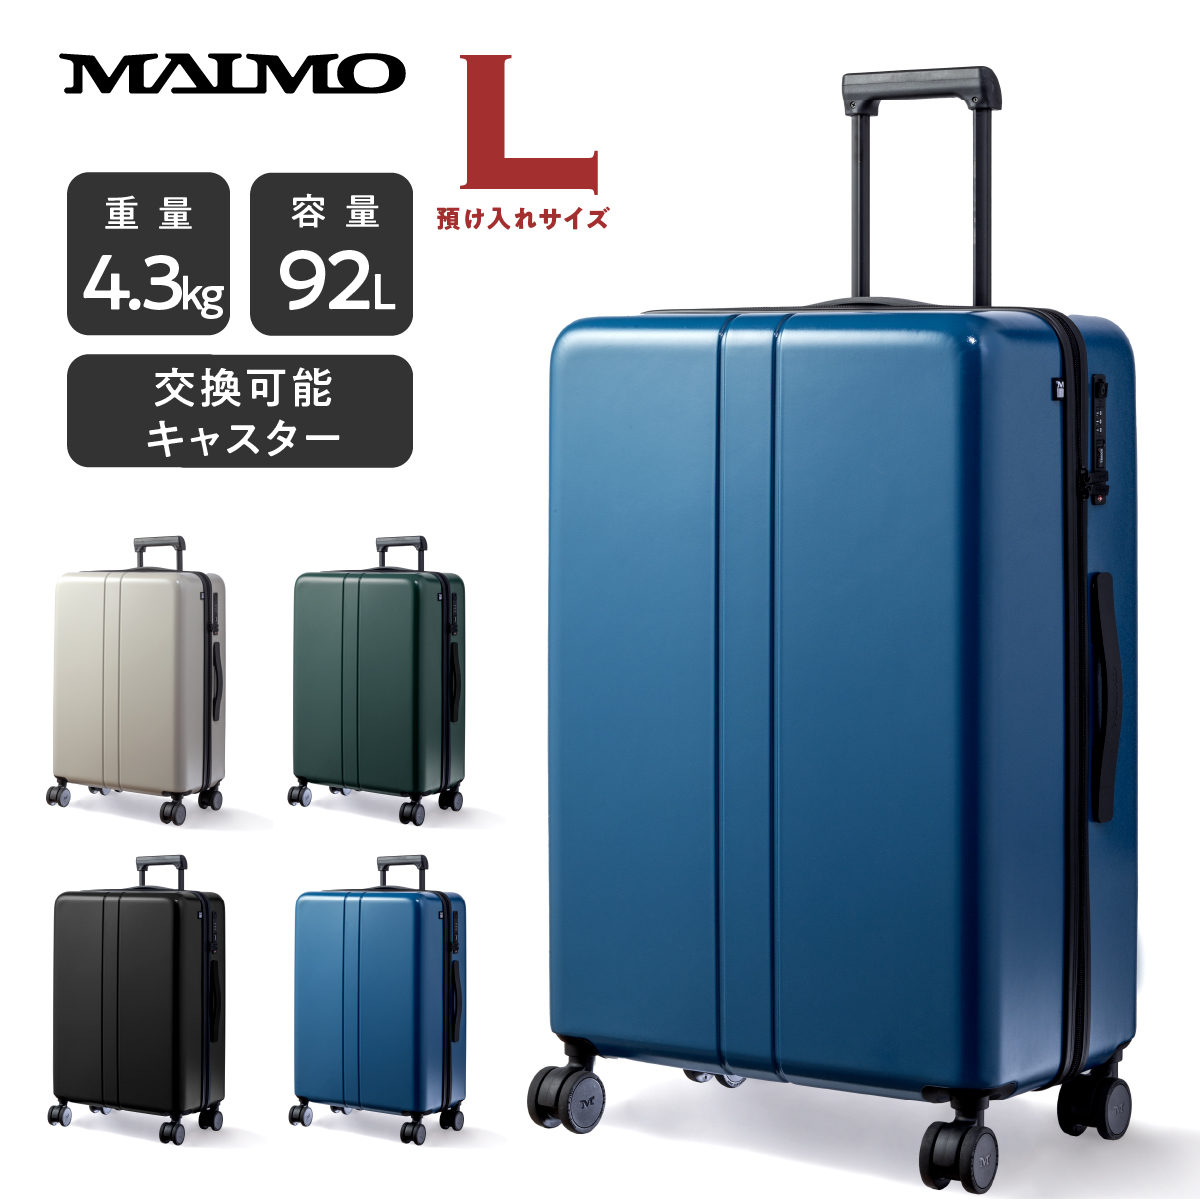 スーツケース キャリーケース MAIMO公式 キャリーバッグ Lサイズ 日本企業 超軽量 大容量 静音 ダブルキャスター 最新セキュリティ